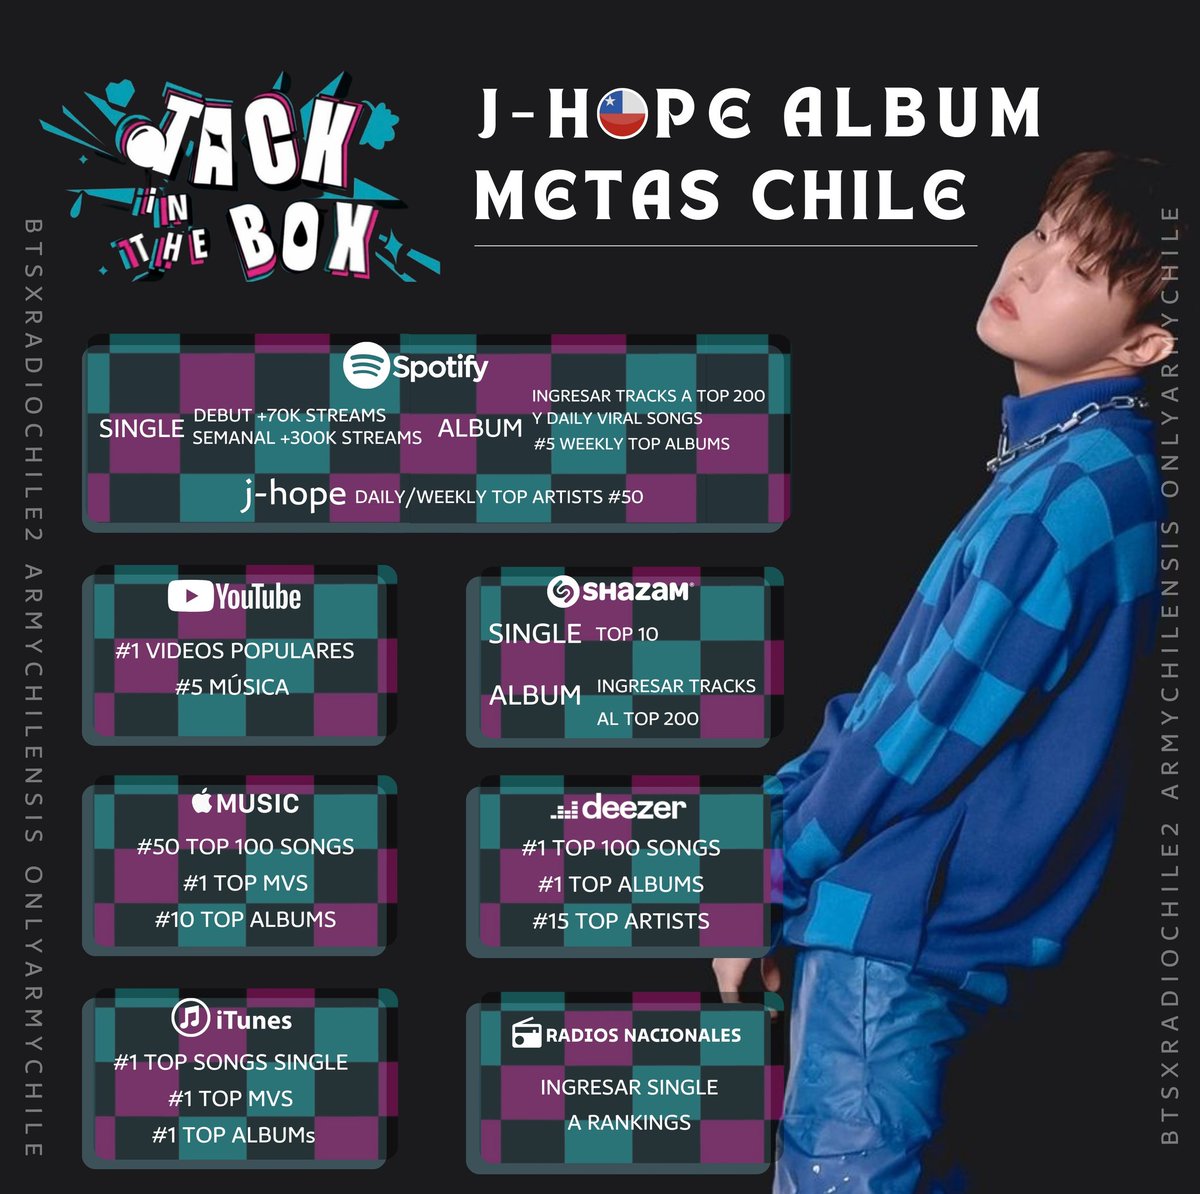 📍 Metas Chile 🇨🇱 #JackInTheBox Compartimos los objetivos por plataforma para el primer álbum en solitario 'Jack in the box' de j-hope. Apoyemos con todo este paso de Hobi. Se nos viene en grande, el primer día es importante y la longevidad es nuestro trabajo @BTS_twt #jhope